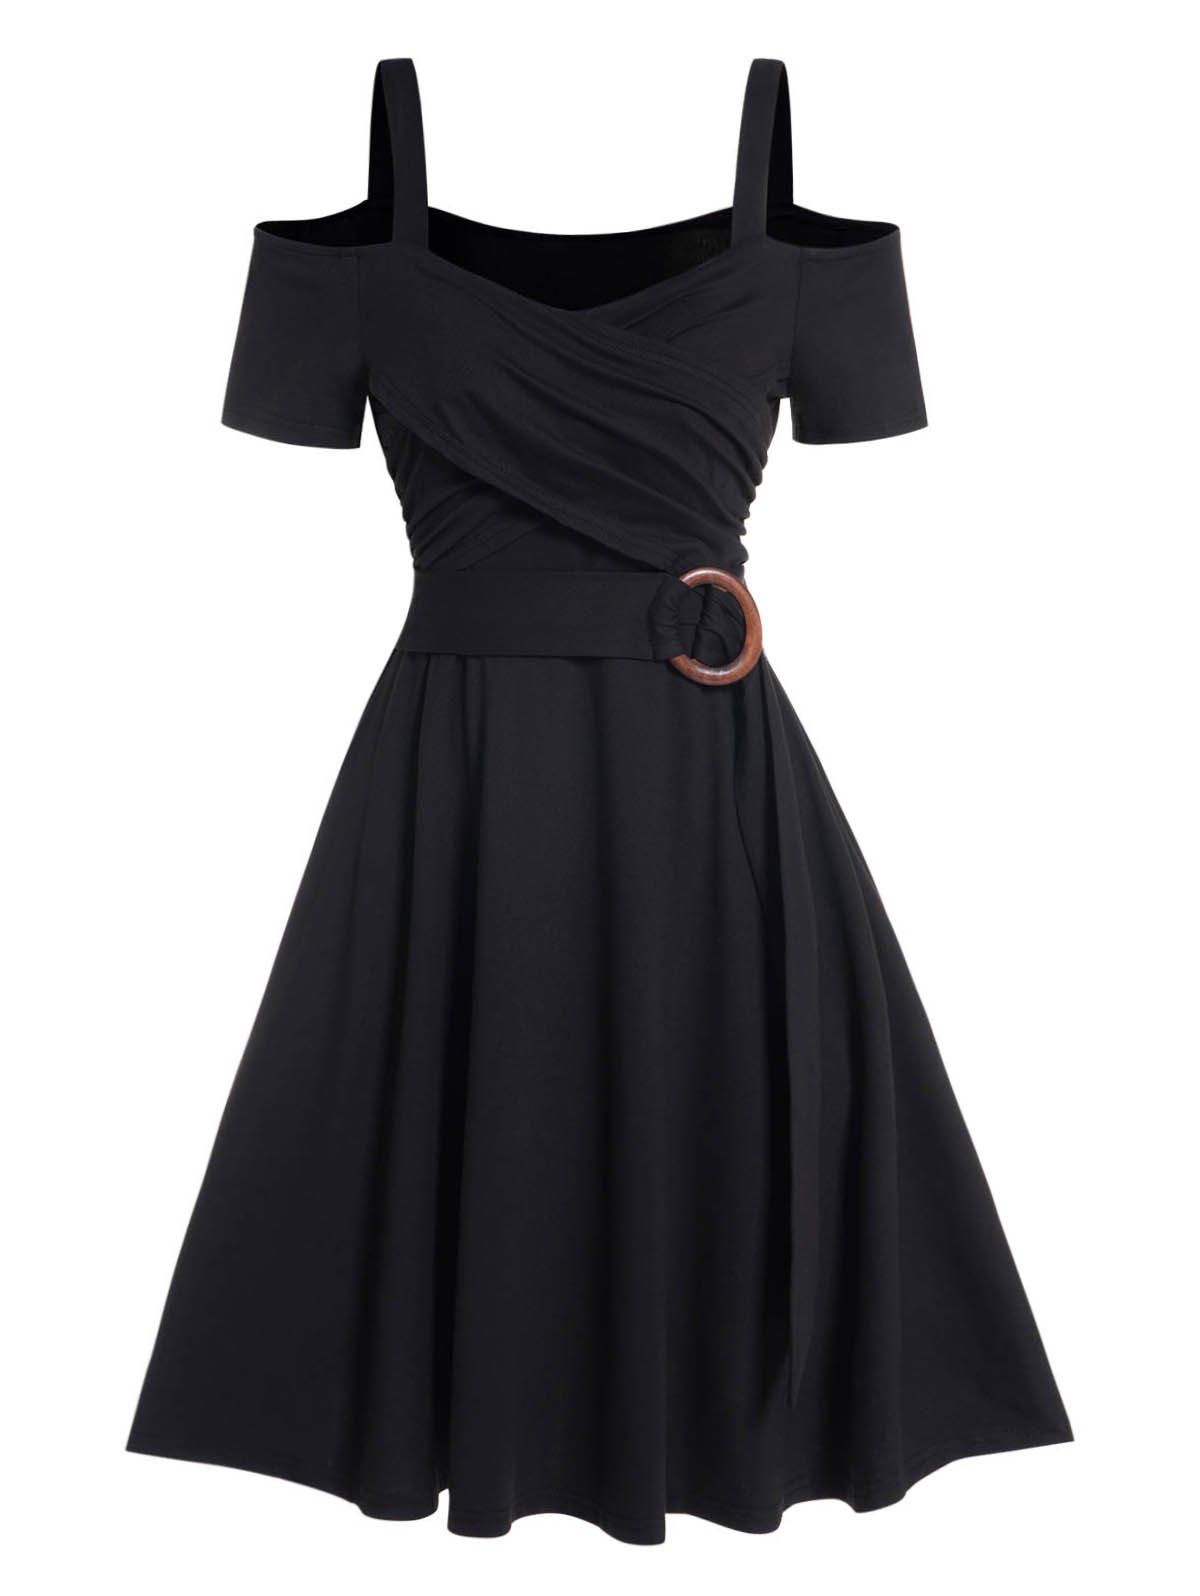 Cold Shoulder Crossover O Ring Dress Short Sleeve Sweetheart Neck A Line Dress - BLACK S